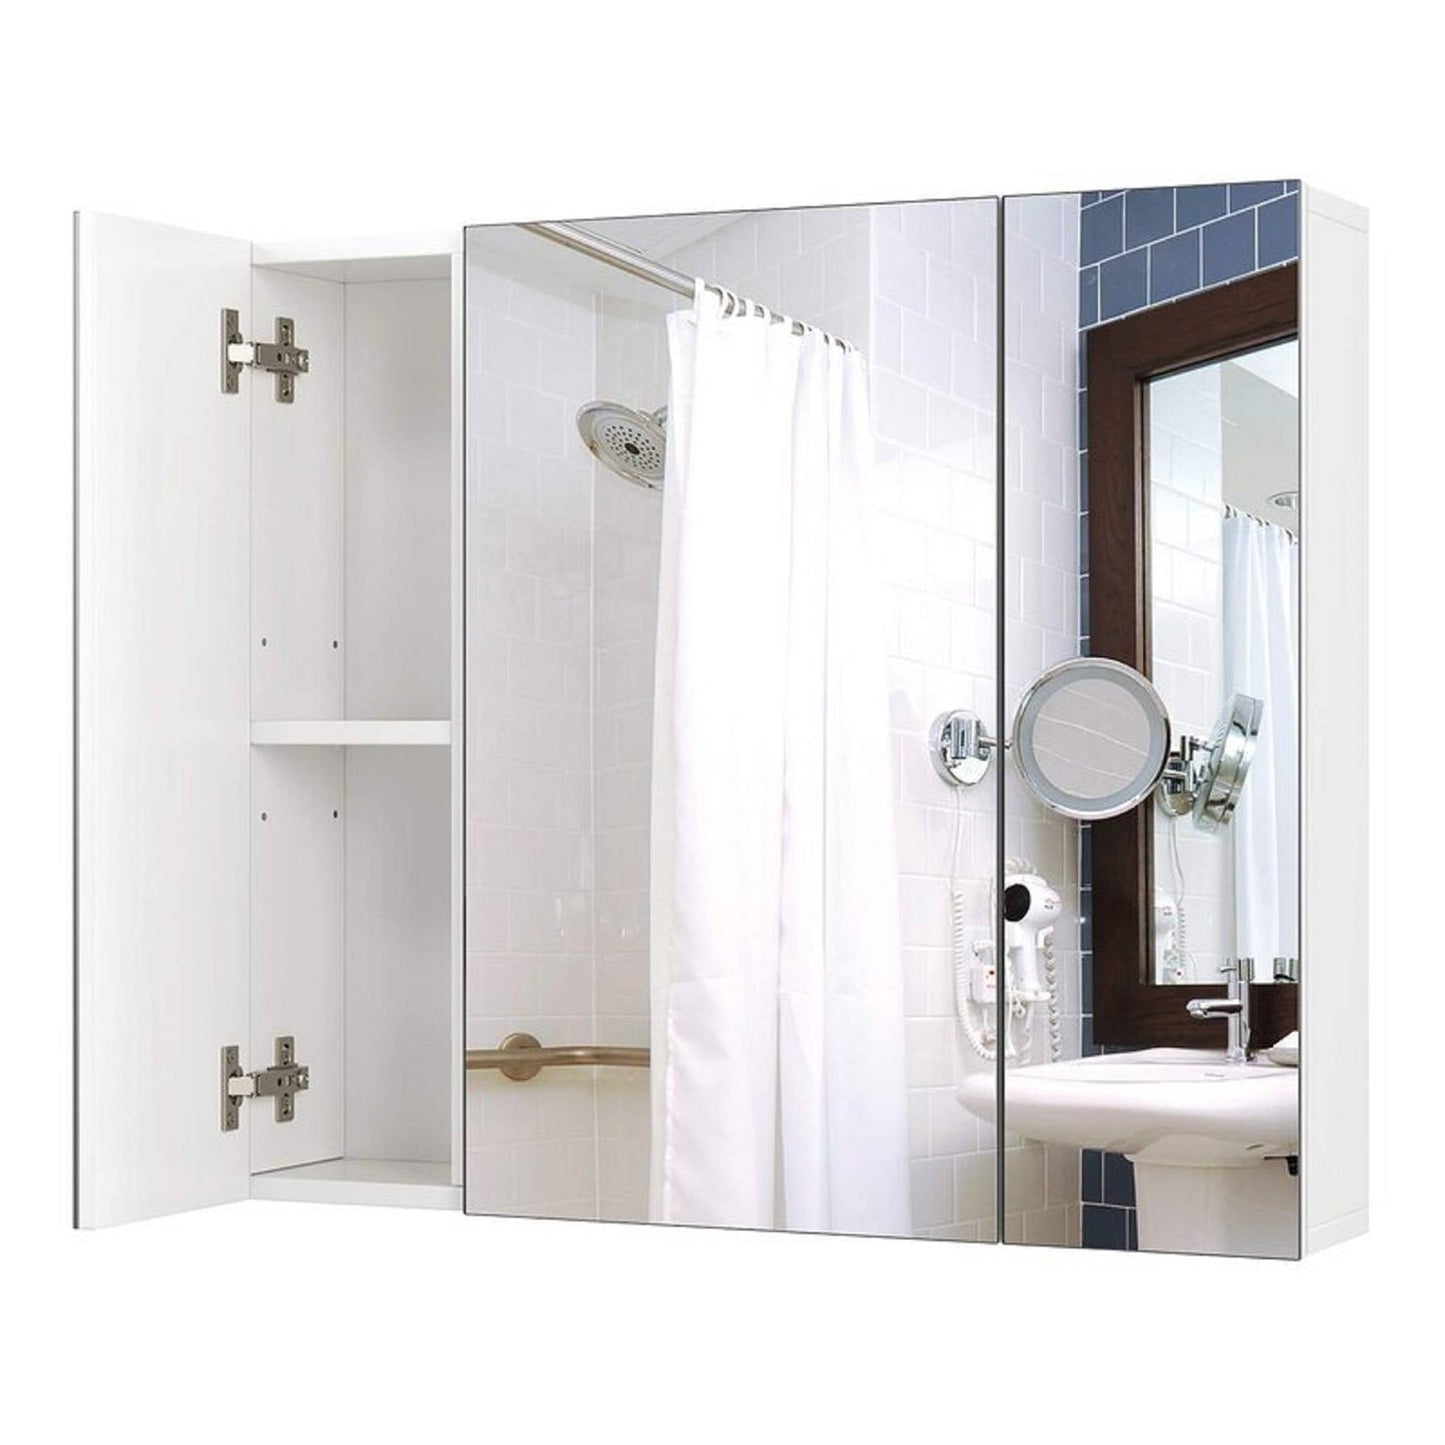 Bathroom > Bathroom Cabinets - Modern 3-Door Wall Mounted Medicine Cabinet Bathroom Mirror Cupboard